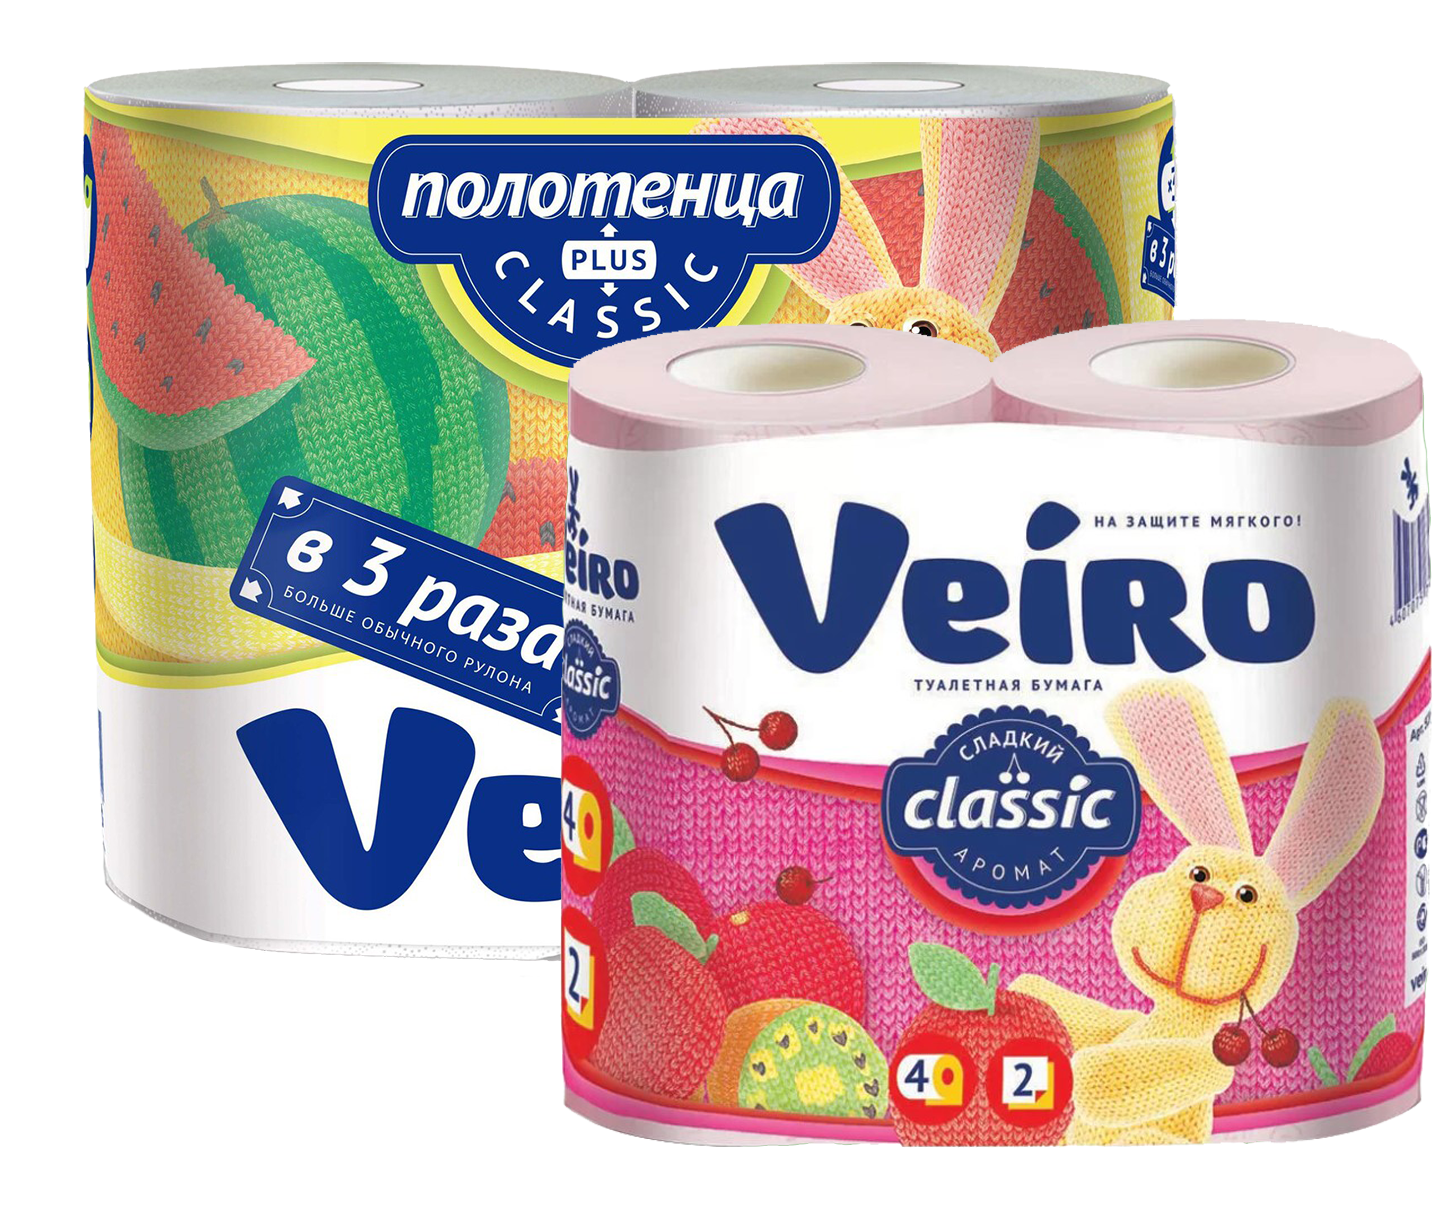 Продукция Veiro по выгодной цене